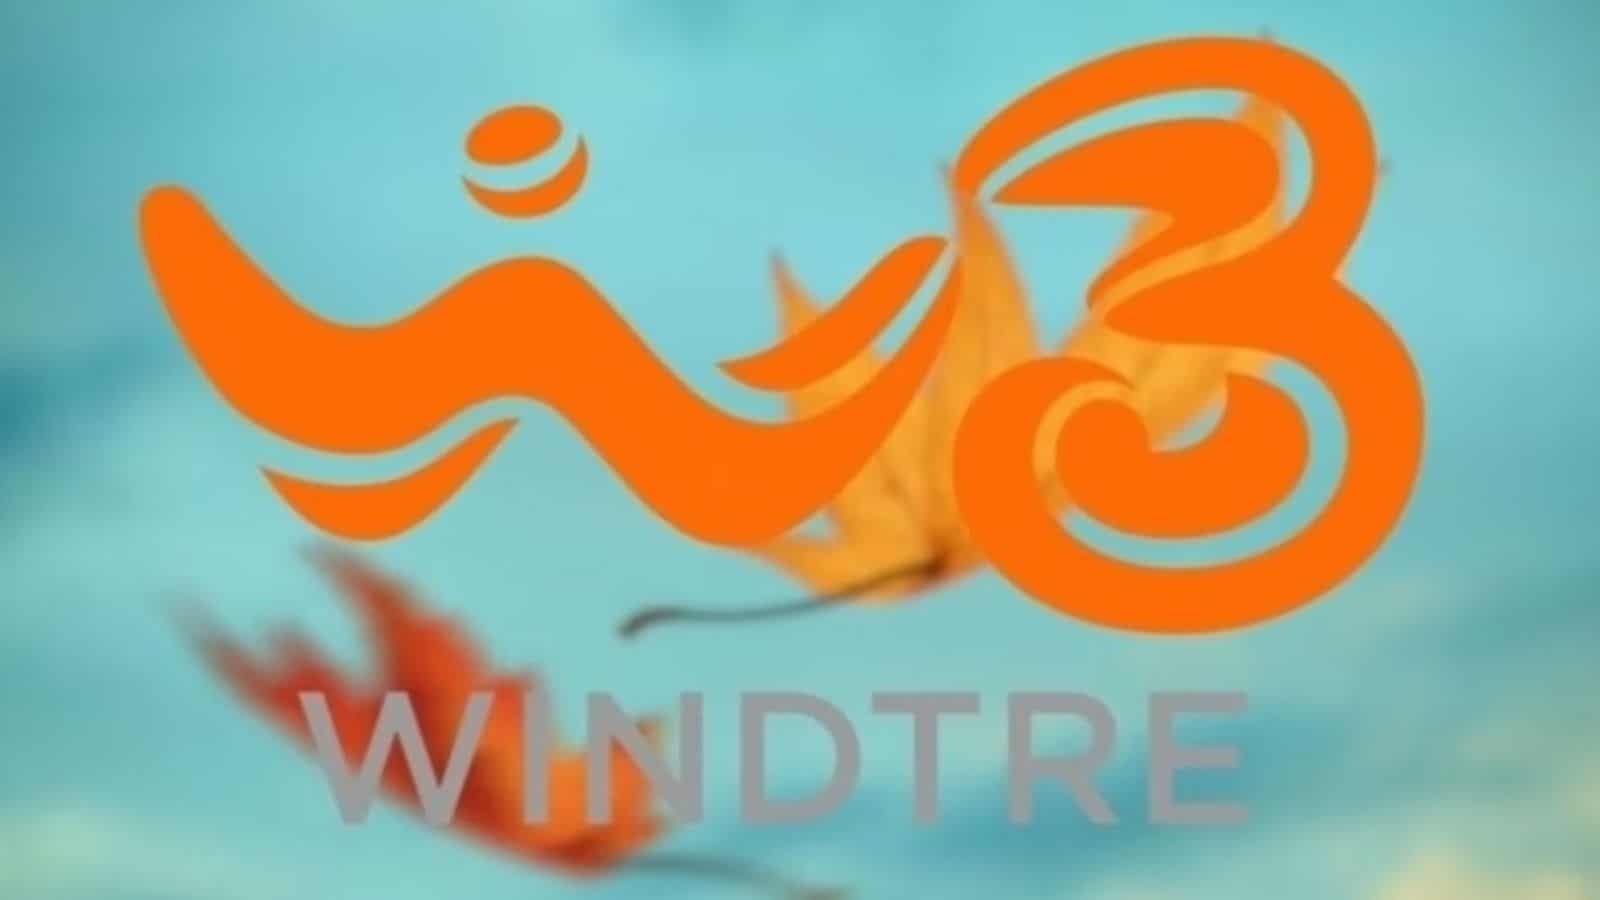 Windtre mia Unlimited 5g promo 